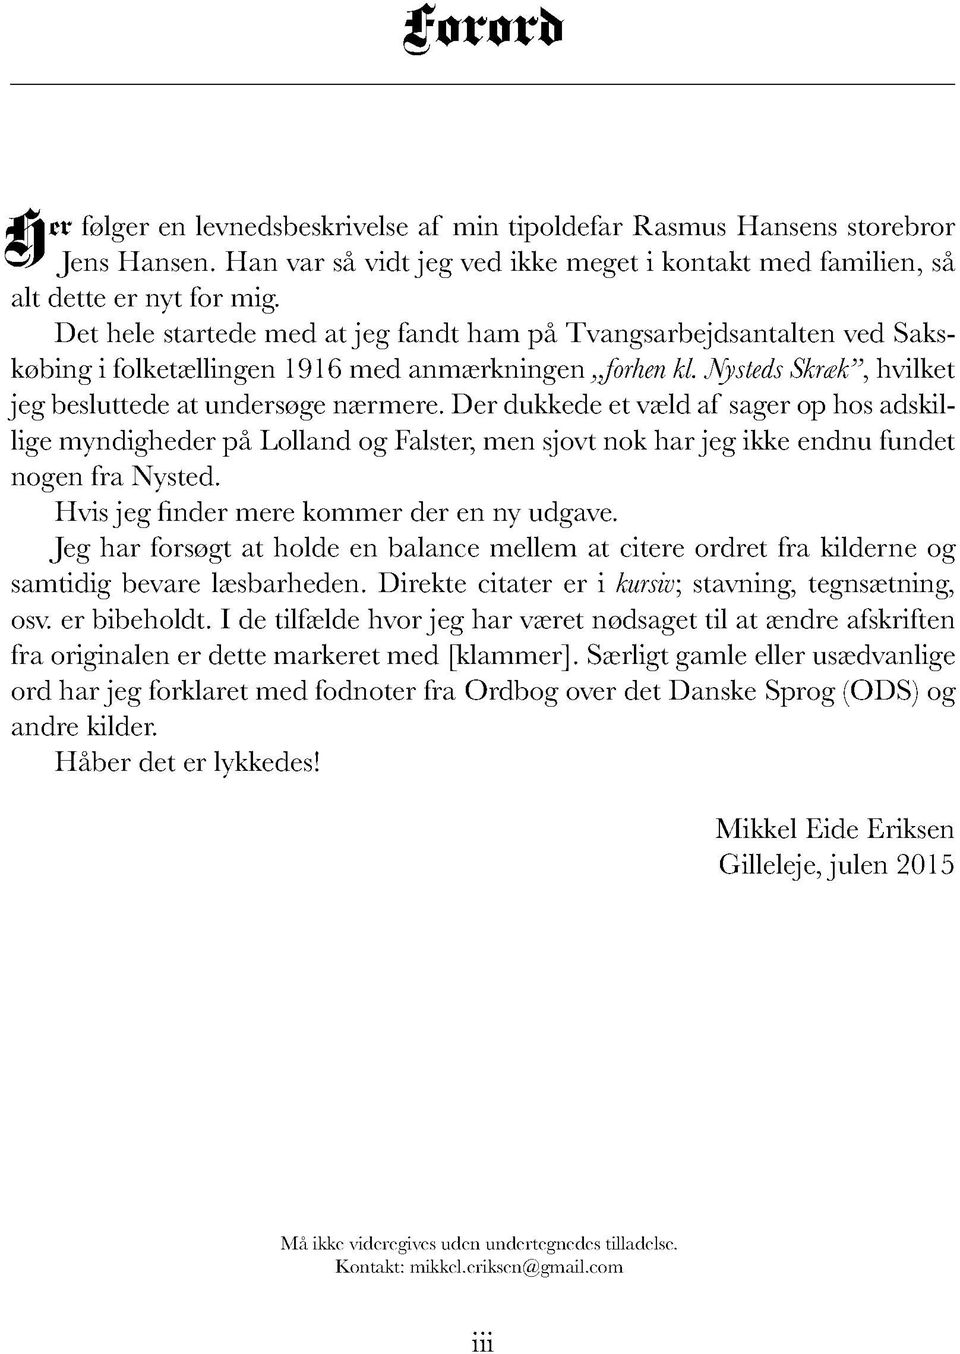 Mikkel Eide Eriksen. Gilleleje - Gratis download